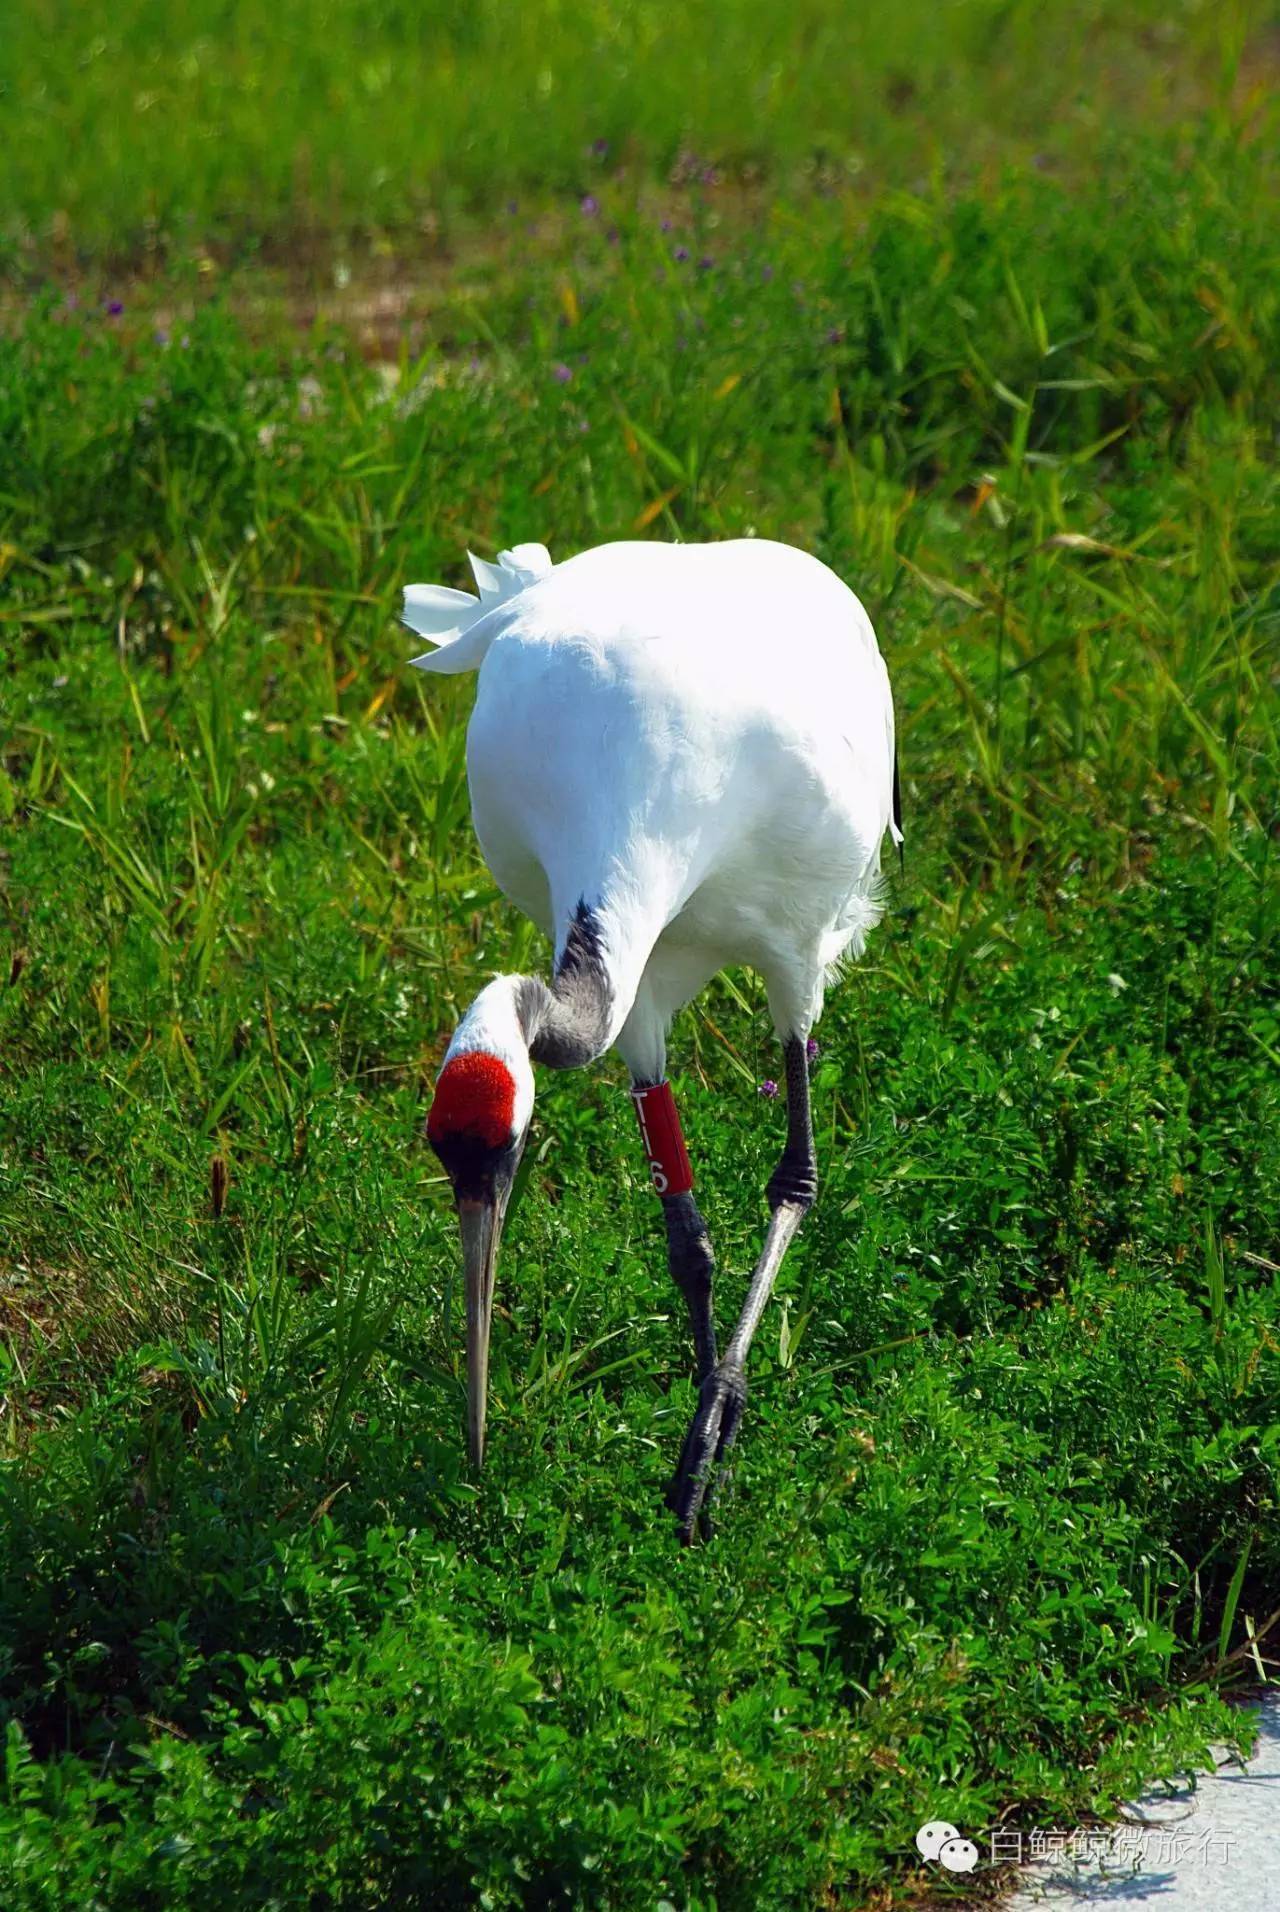 我们诞生在中国:齐齐哈尔扎龙湿地丹顶鹤之美